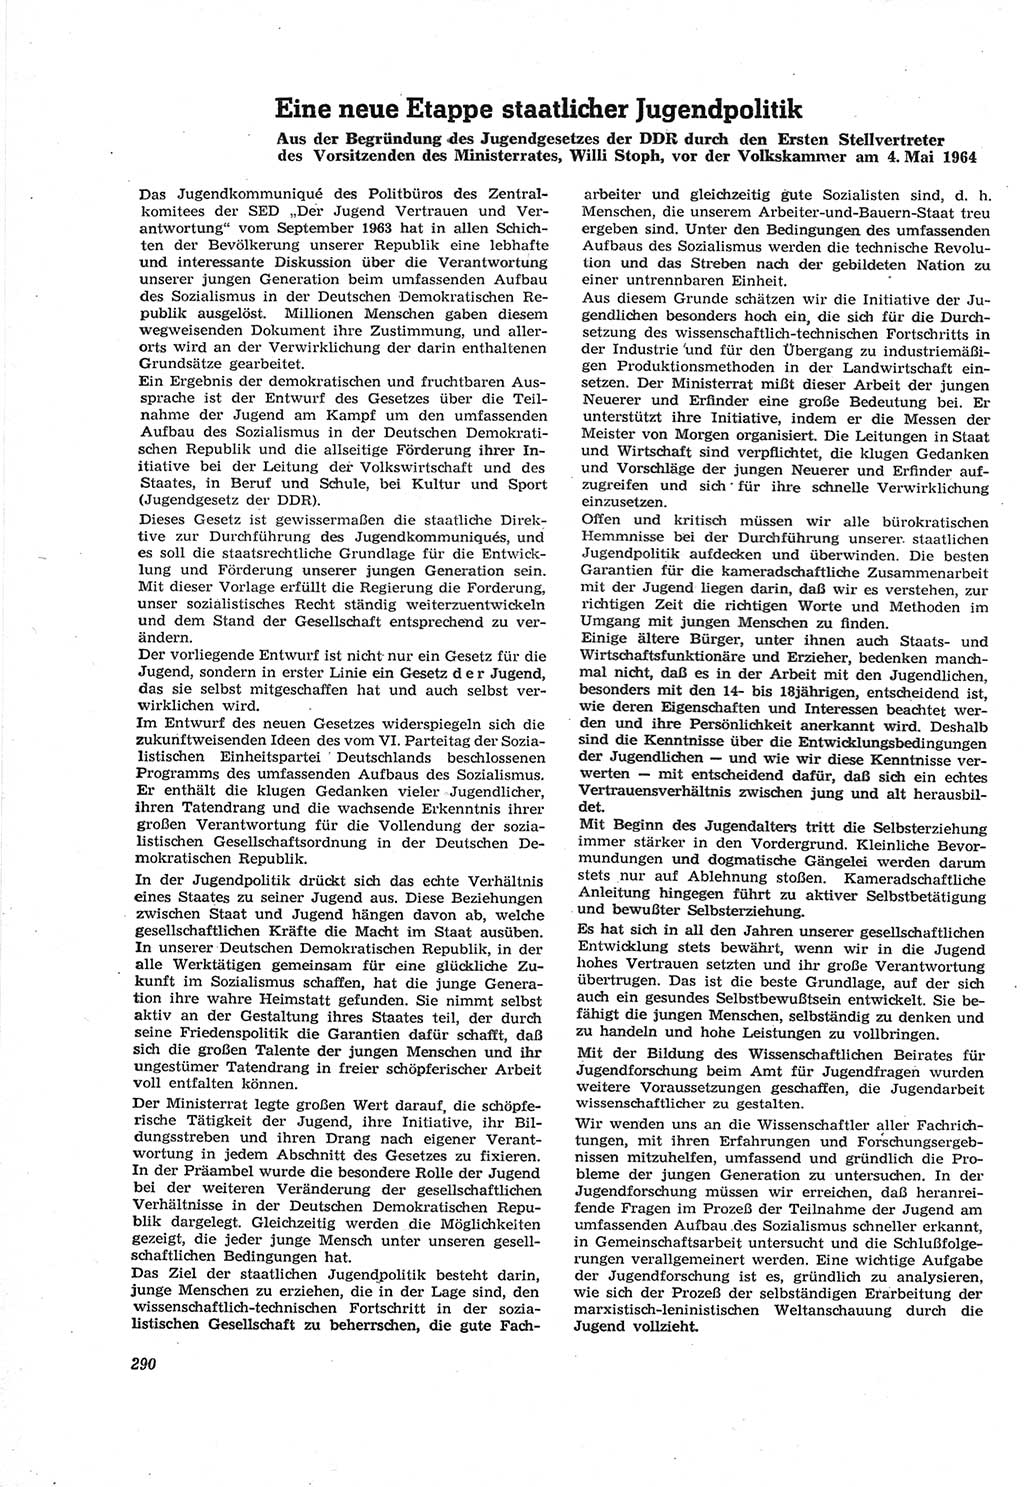 Neue Justiz (NJ), Zeitschrift für Recht und Rechtswissenschaft [Deutsche Demokratische Republik (DDR)], 18. Jahrgang 1964, Seite 290 (NJ DDR 1964, S. 290)